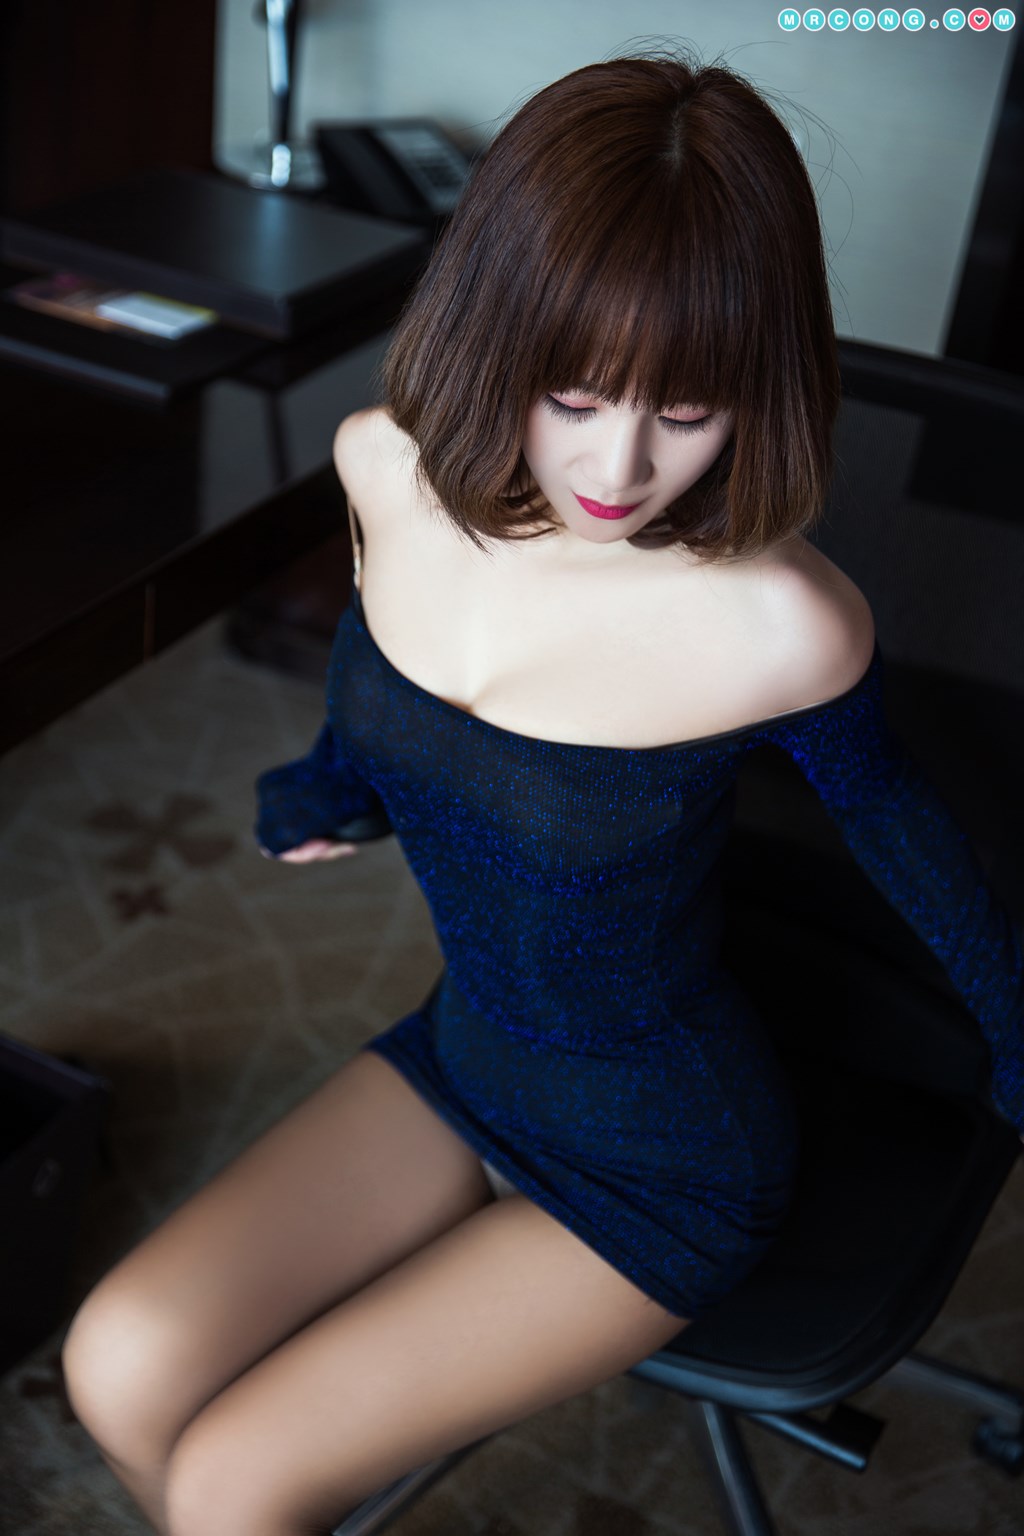 TouTiao 2018-03-23: Model Qian Xue (芊 雪) (21 photos)